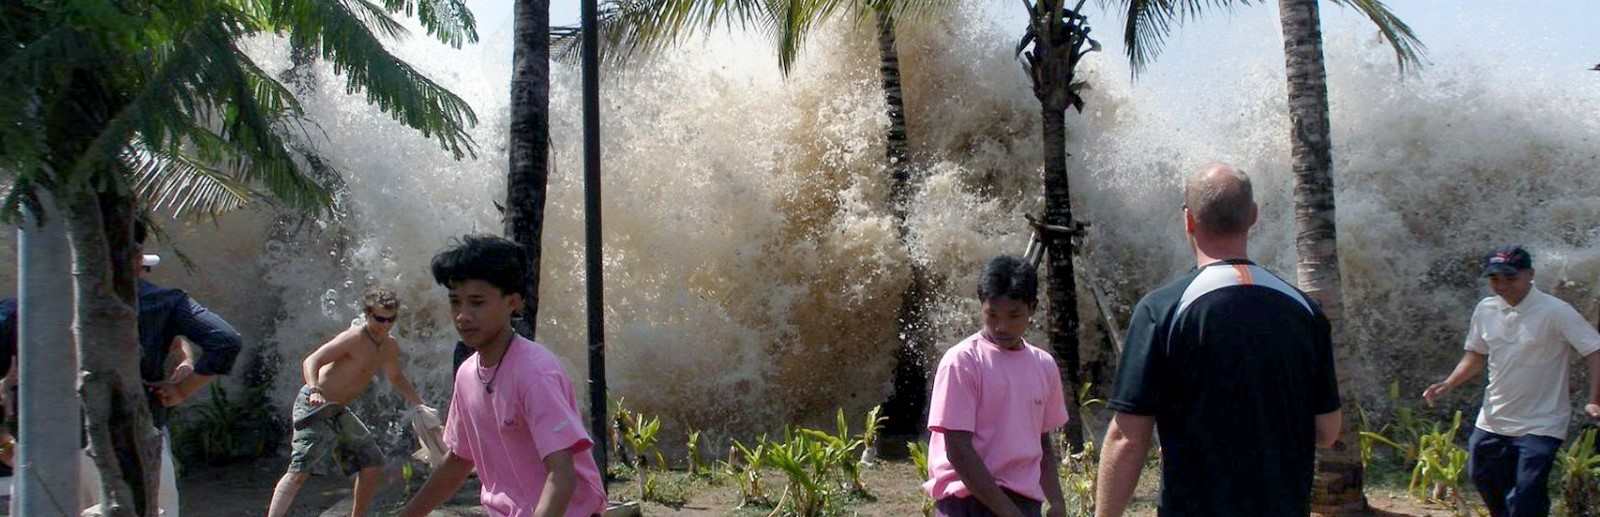 Phuket tsunami 2004 Patong.jpg